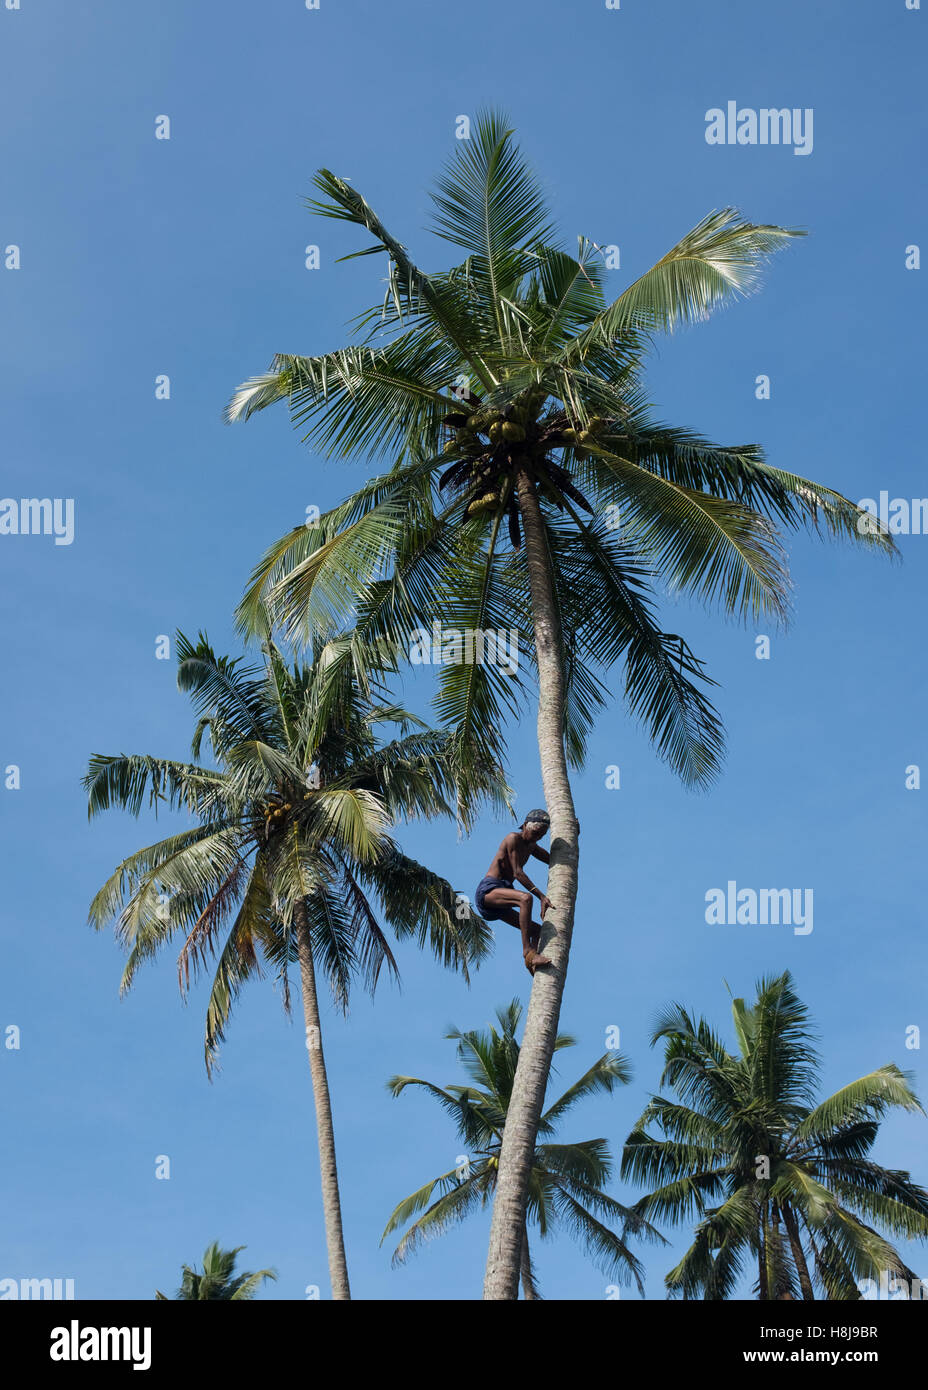 Uomo che sale su tronco per raccogliere noci di cocco, Sri Lanka Foto Stock